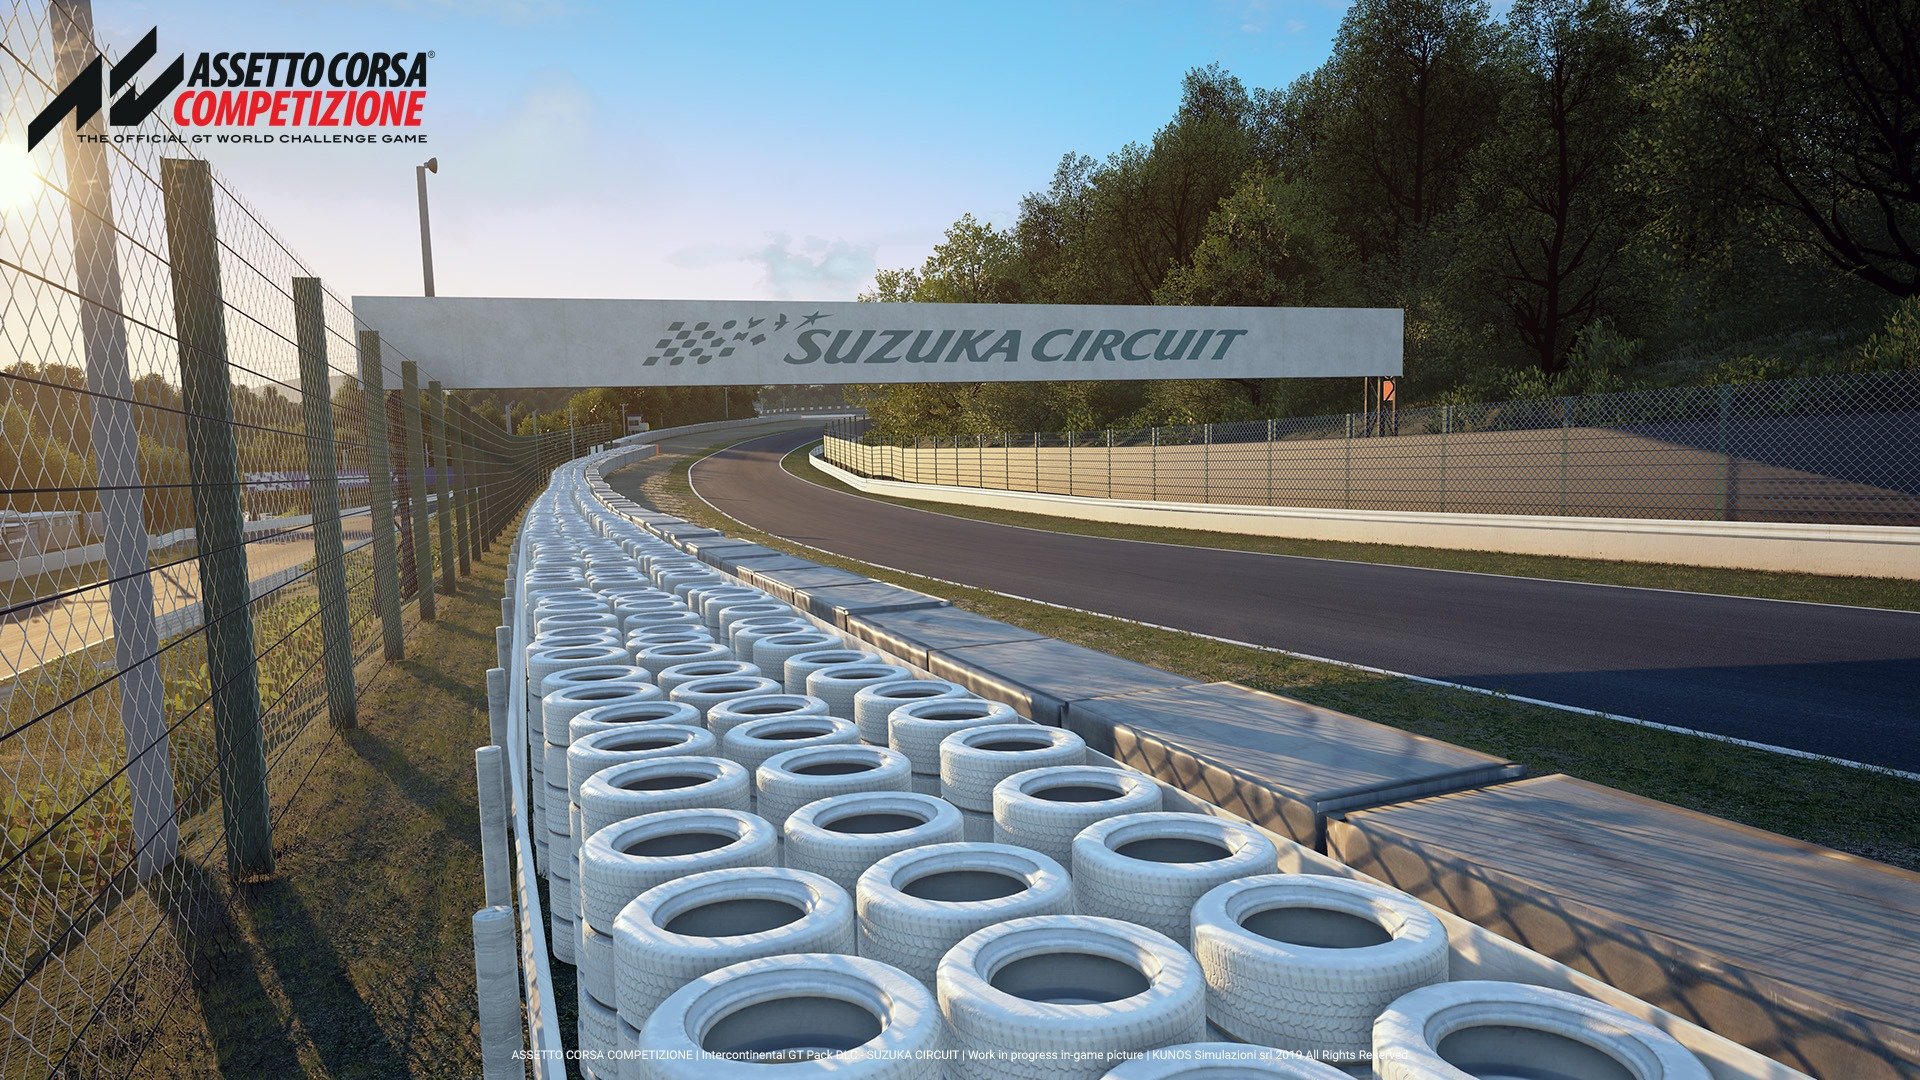 More information about "Assetto Corsa Competizione: in arrivo anche Suzuka, prime immagini"